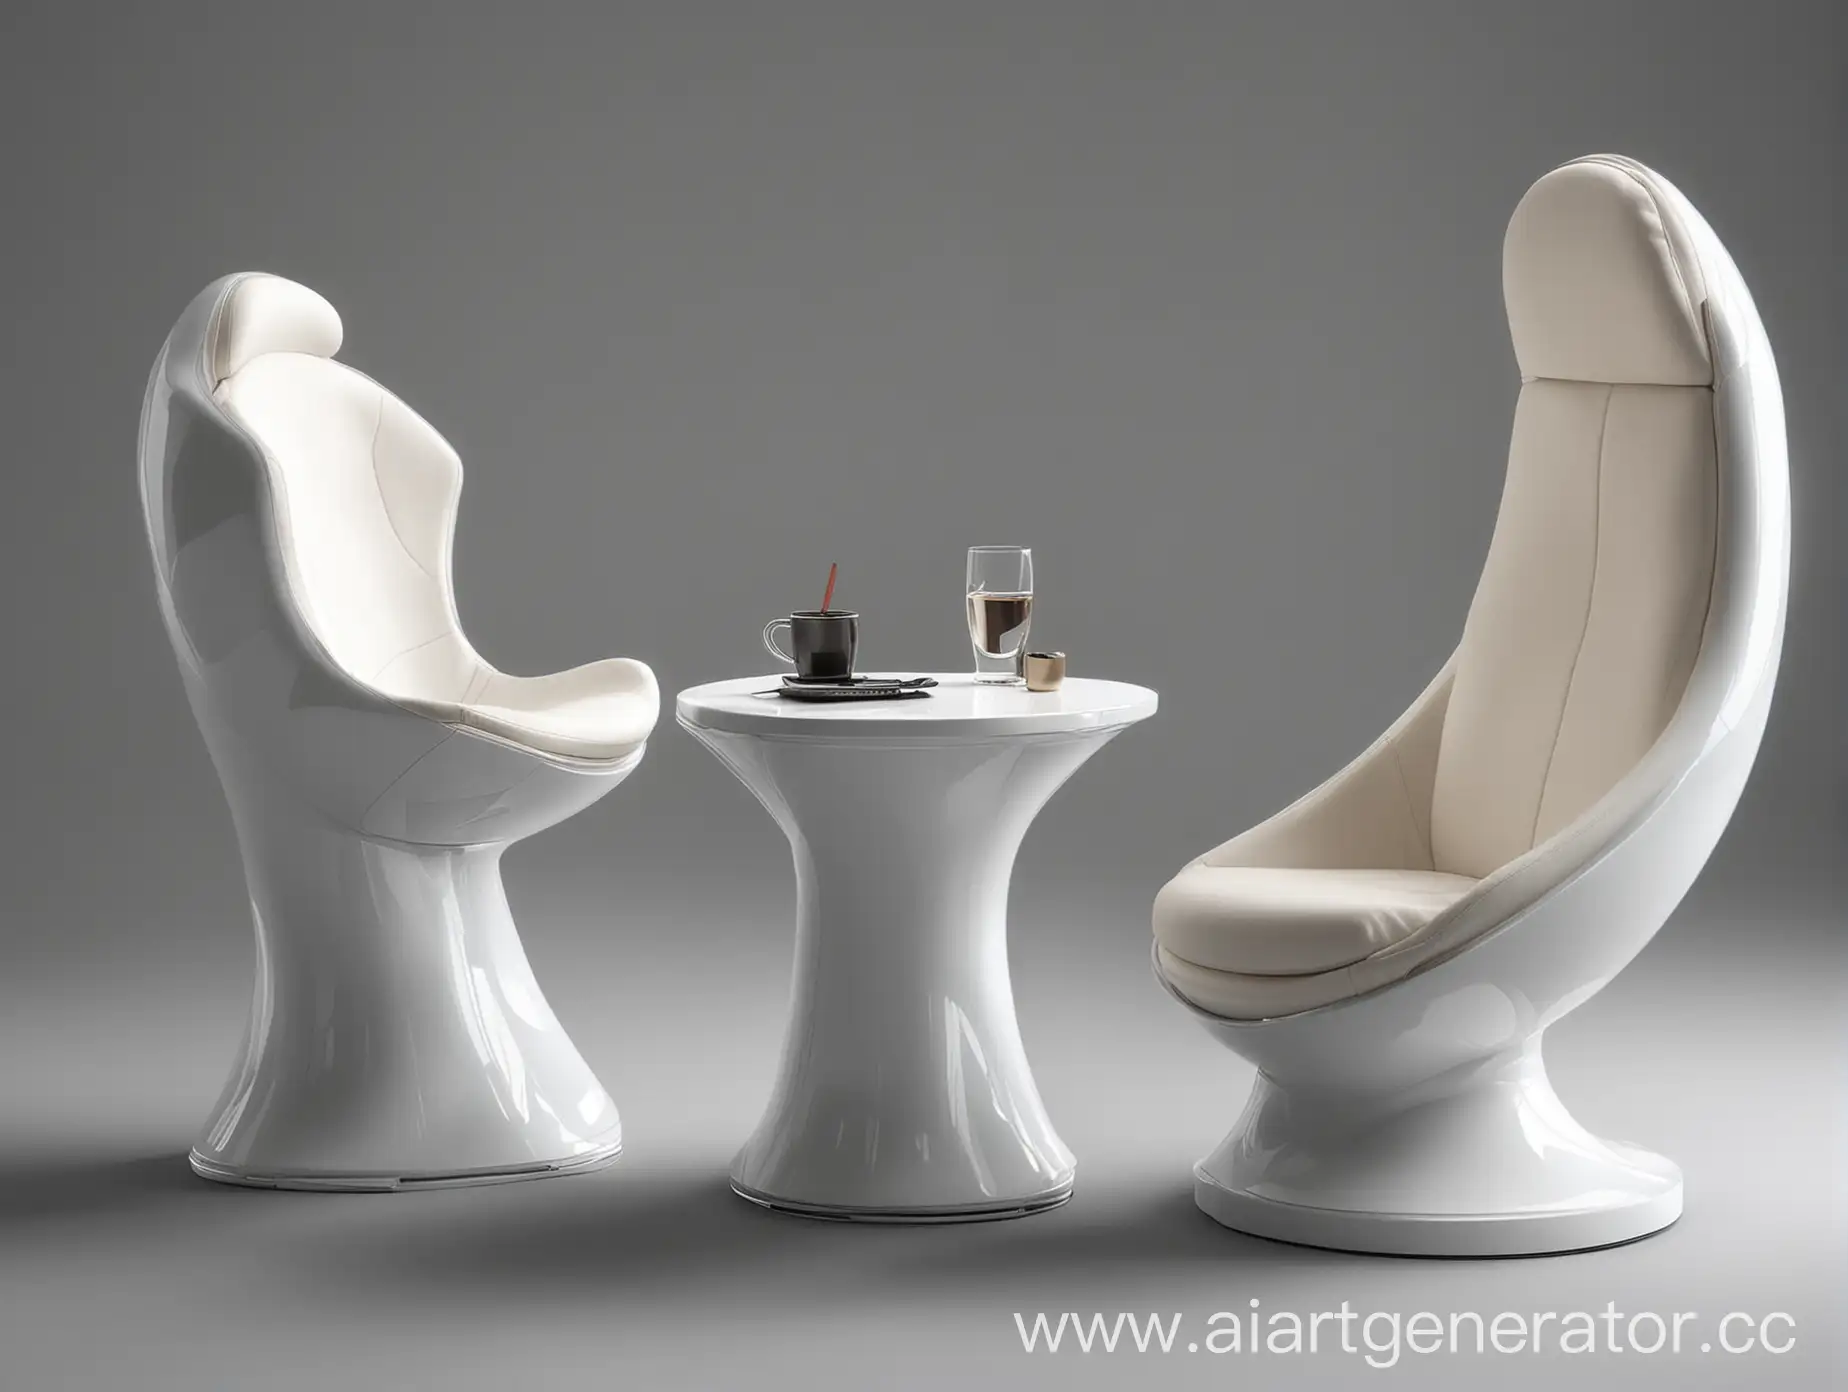 кресло будущего, футуристический стиль, полукруглое кресло, сферическое кресло, динамики в подголовнике, с боку мини столик